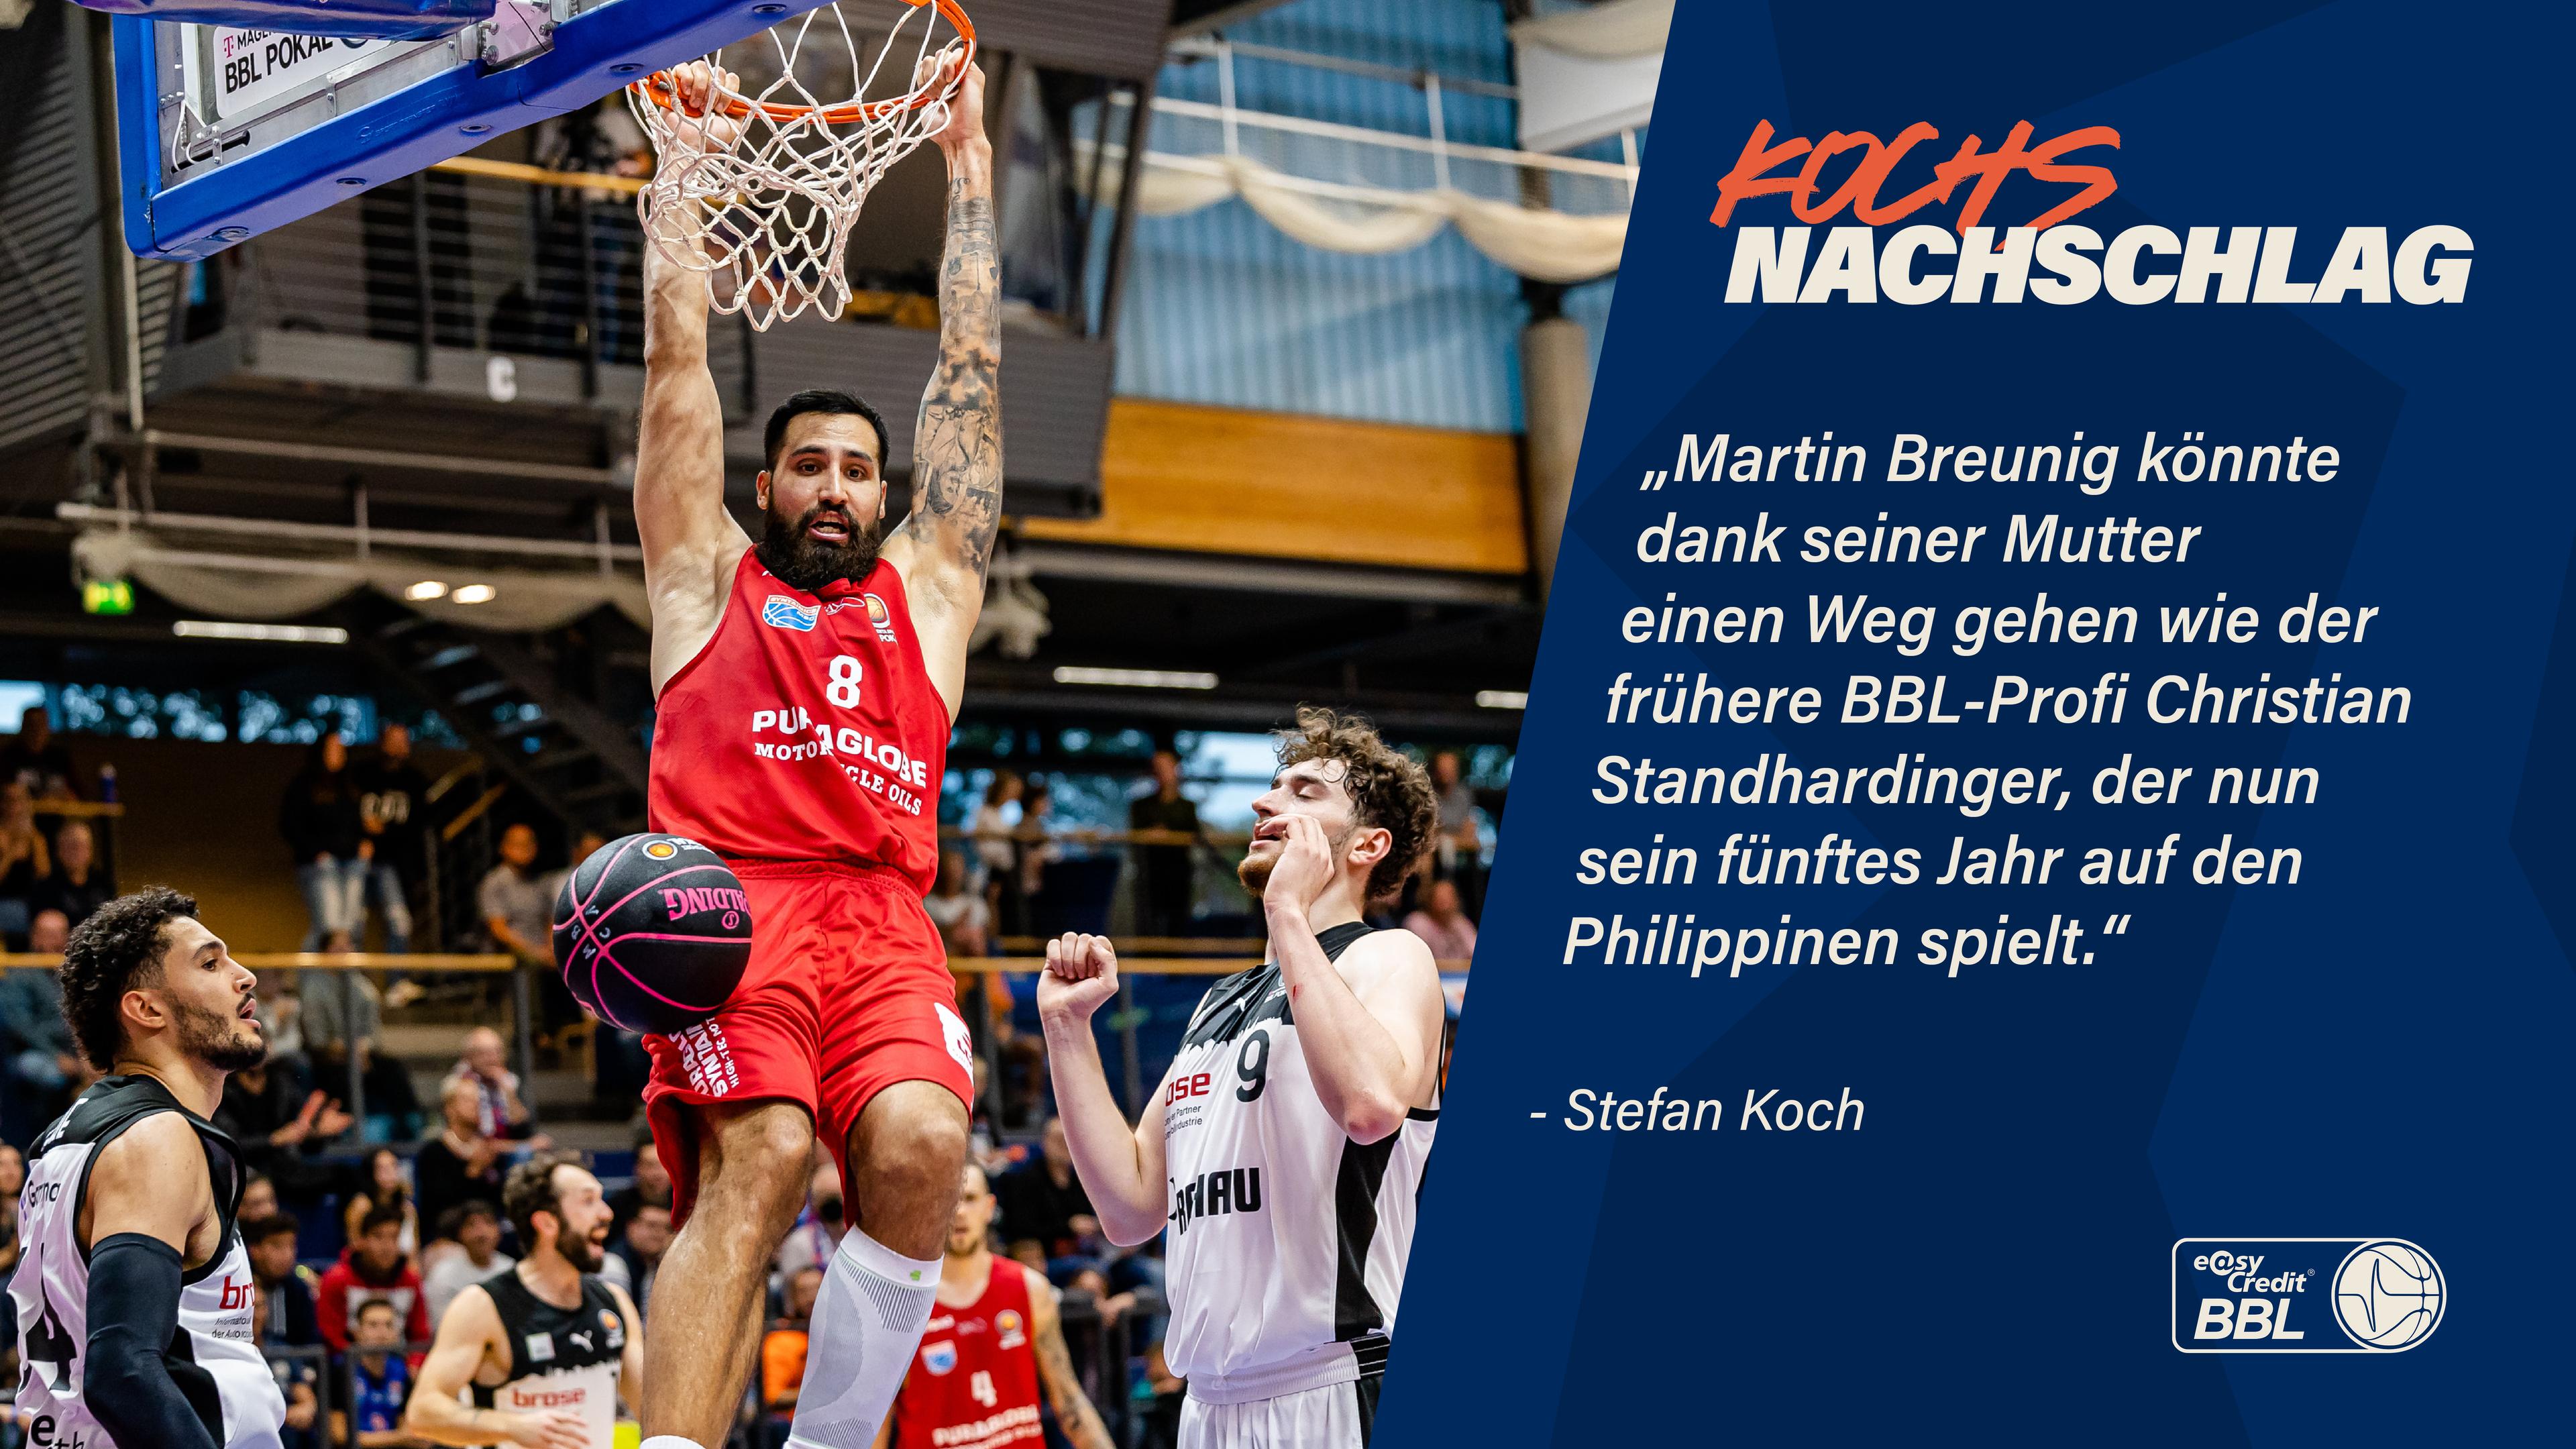 Gerade in den FIBA-Fenstern während der Saison hätte Martin Breunig auch Chancen gehabt, in die DBB-Auswahl berufen zu werden, aber der Big Man vom SYNTAINICS MBC hat andere Pläne.